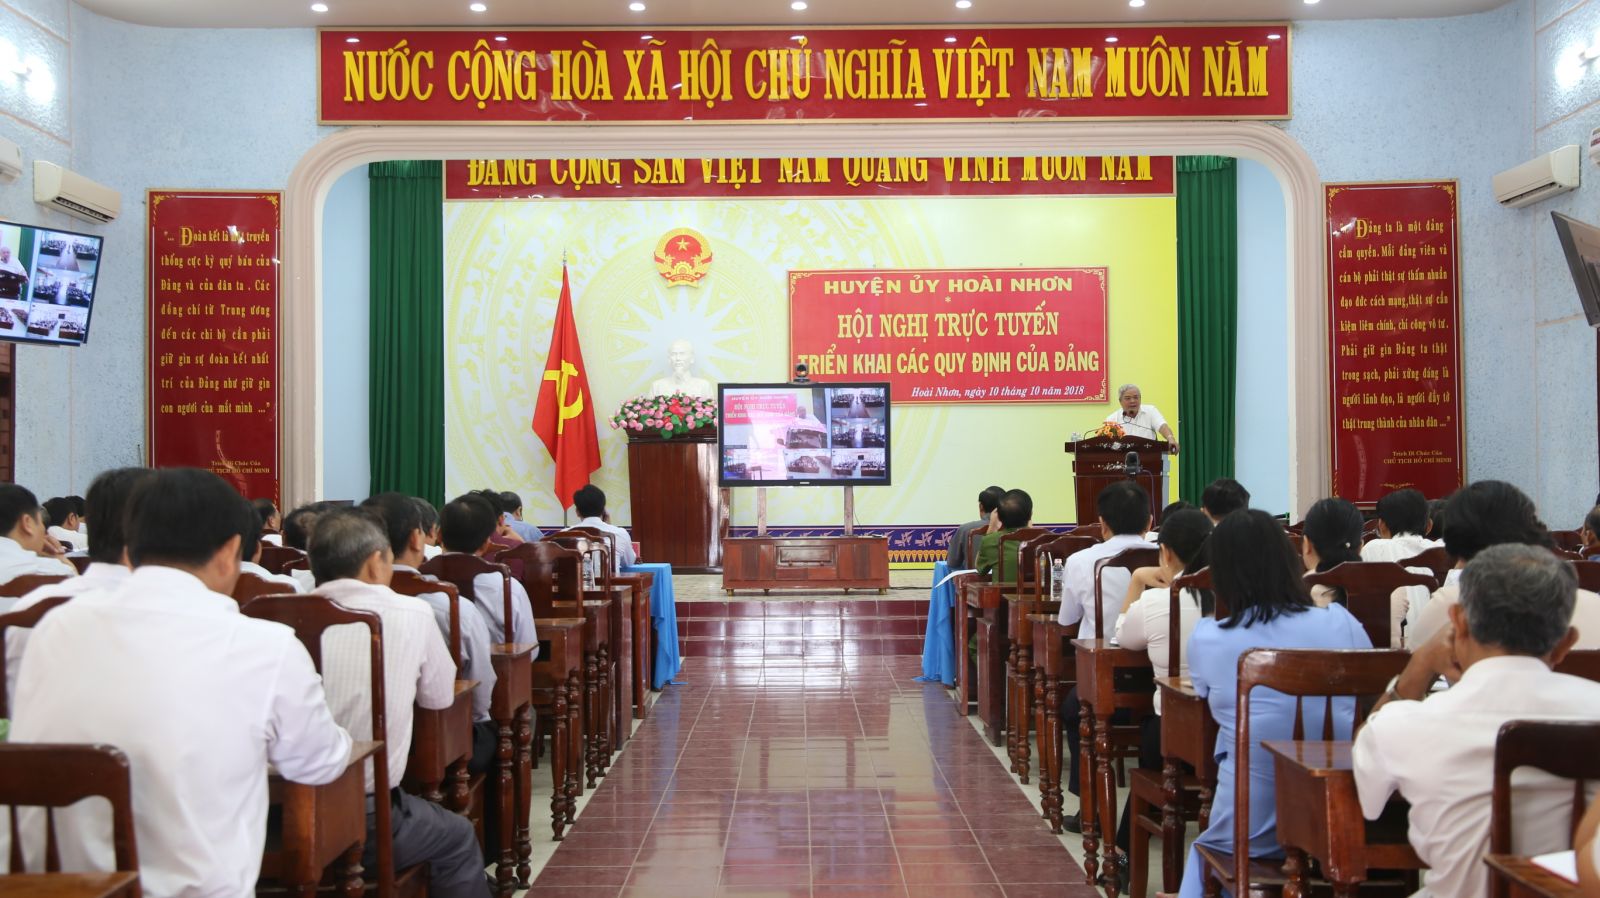 Hoài Nhơn tổ chức hội nghị trực tuyến triển khai các văn bản của Ban chấp hành Trung ương Đảng, tỉnh ủy và Huyện ủy